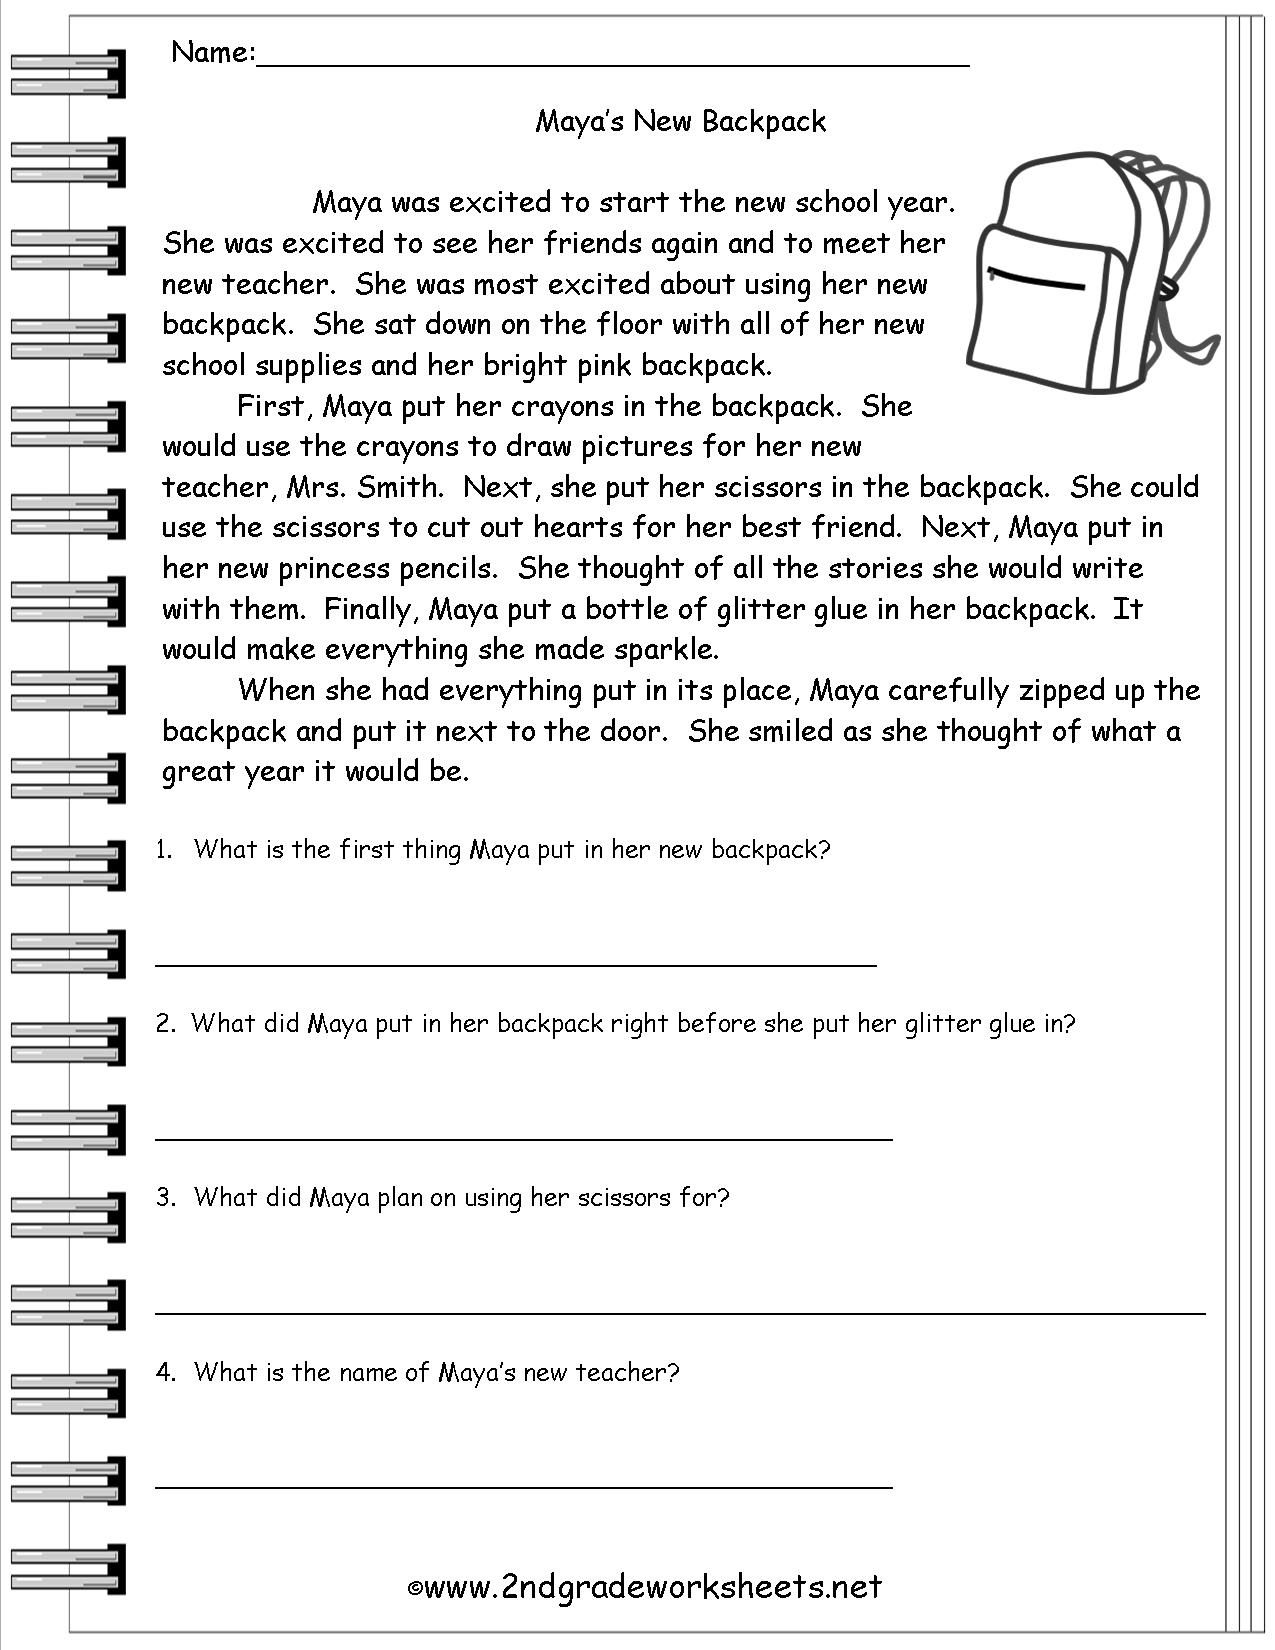 Free Printable English Comprehension Worksheets For Grade 4 | Free | 4Th Grade Comprehension Worksheets Printable